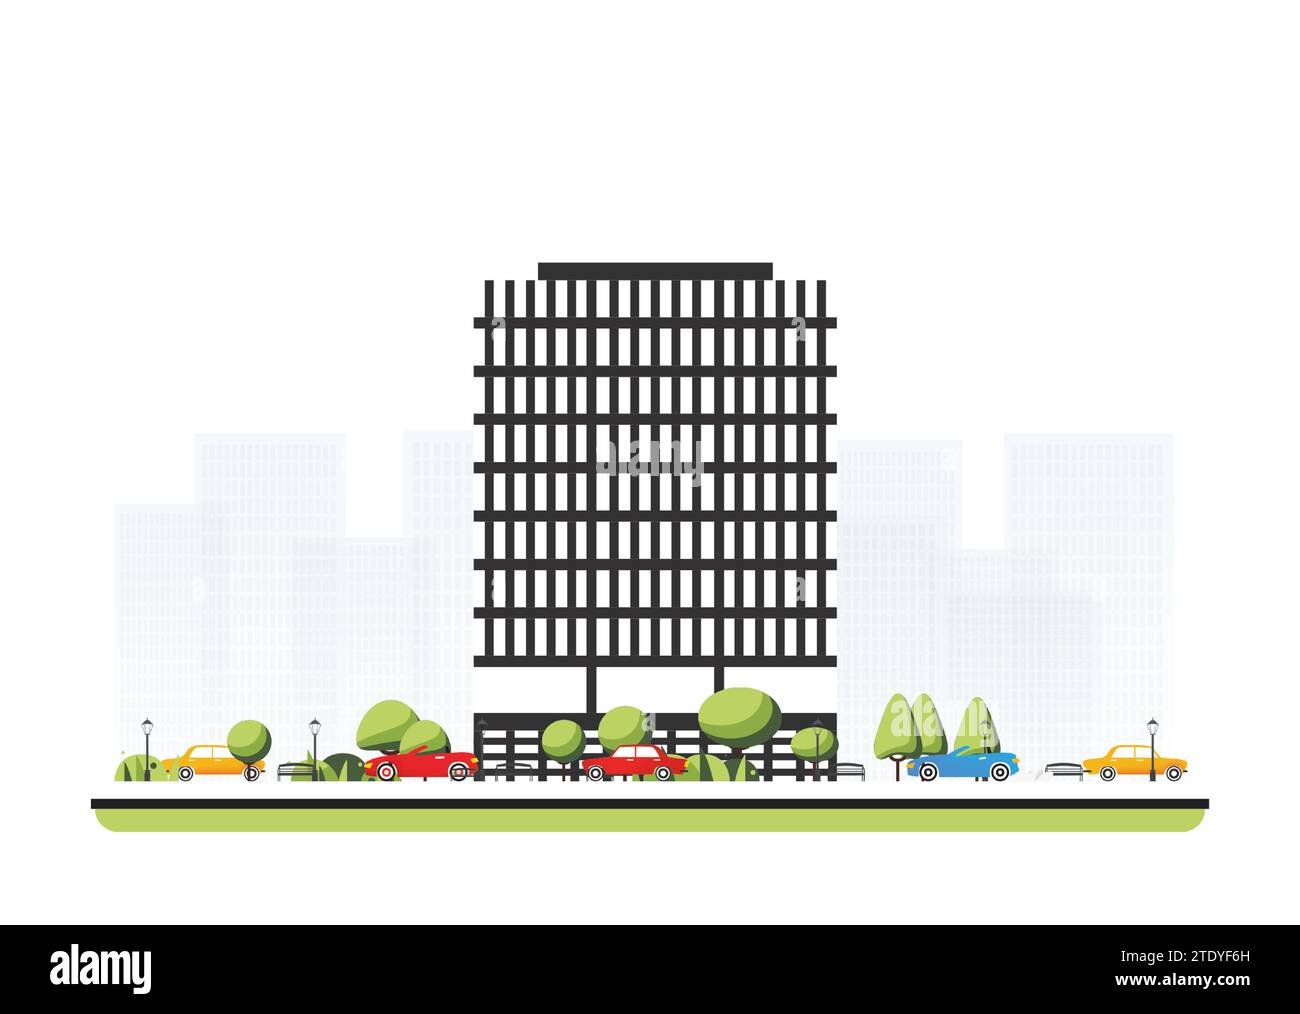 Quartier de la ville avec grand bâtiment moderne dans un style plat avec des arbres et des voitures. Illustration vectorielle. Scène de ville isolée sur fond blanc. Illustration de Vecteur